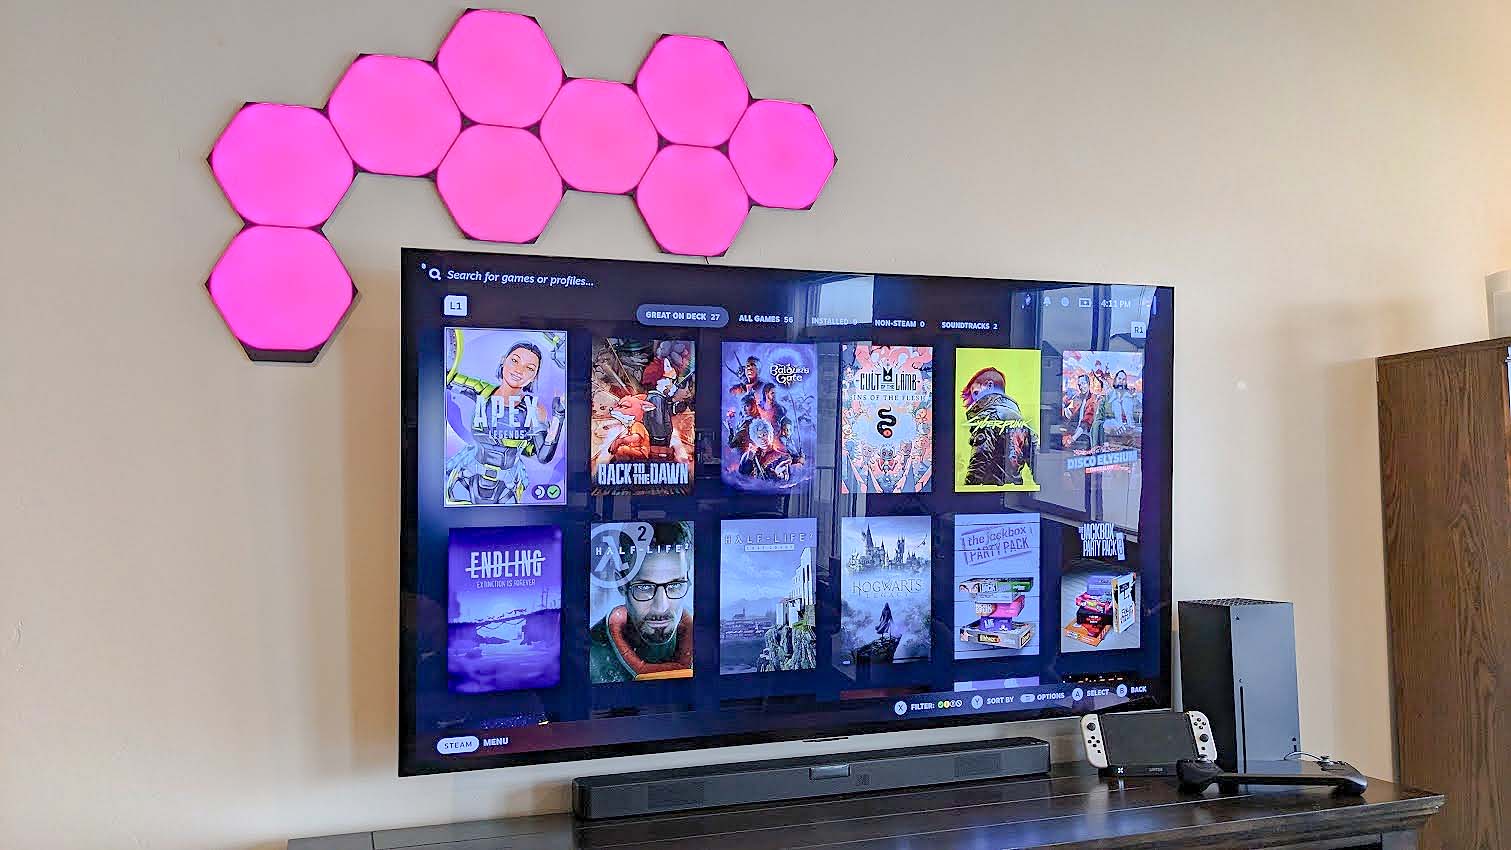 Nanoleaf Shapes Ultra Black Hexagons over TV pink.